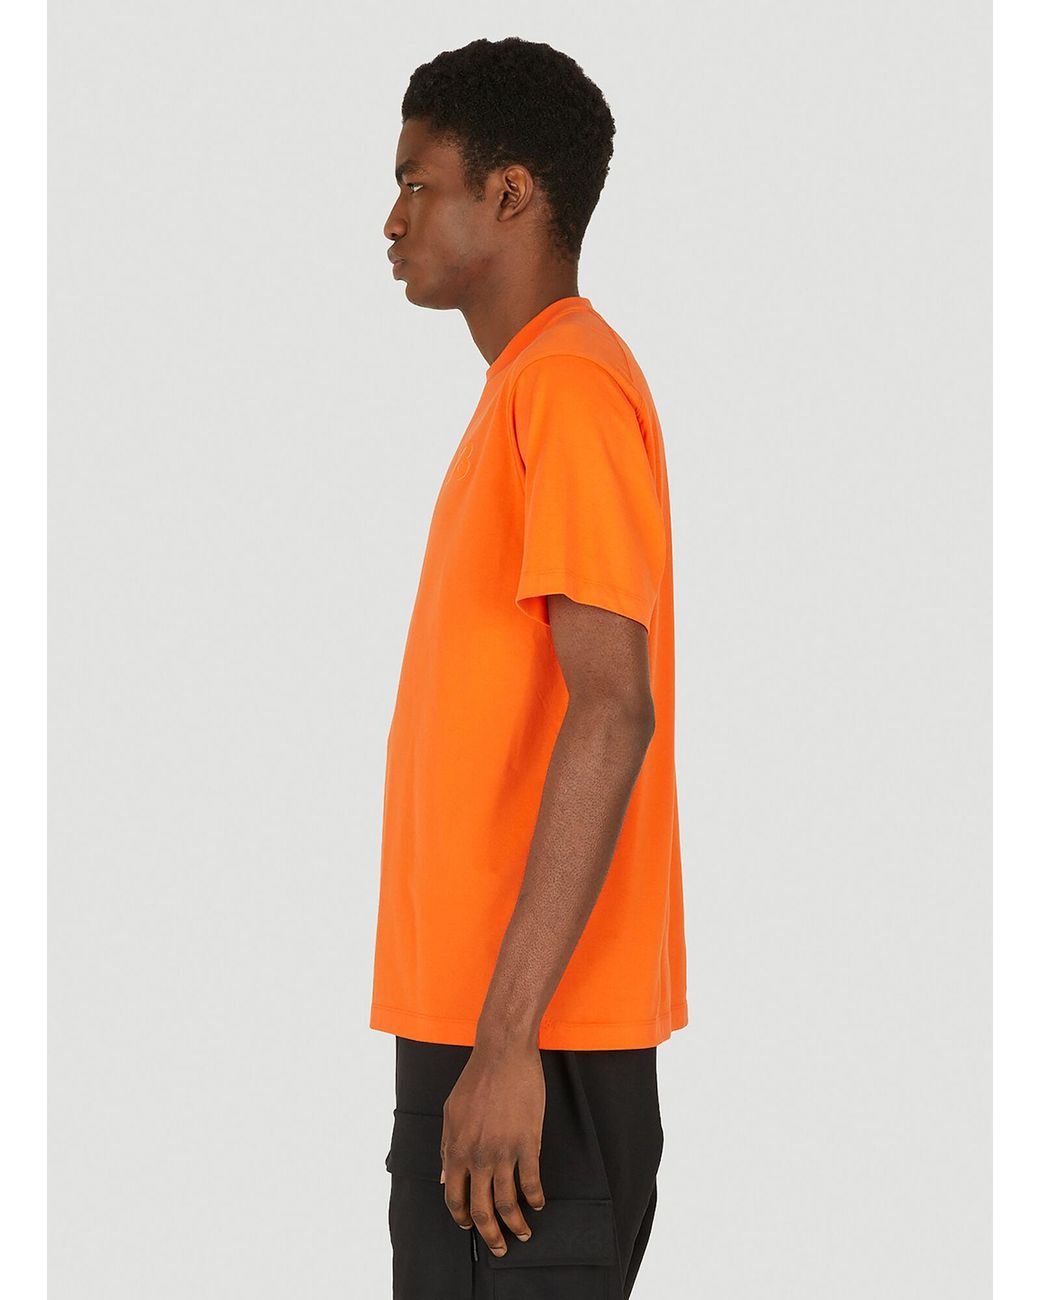 Y-3 Chest Logo T-shirt in Orange for Men | Lyst